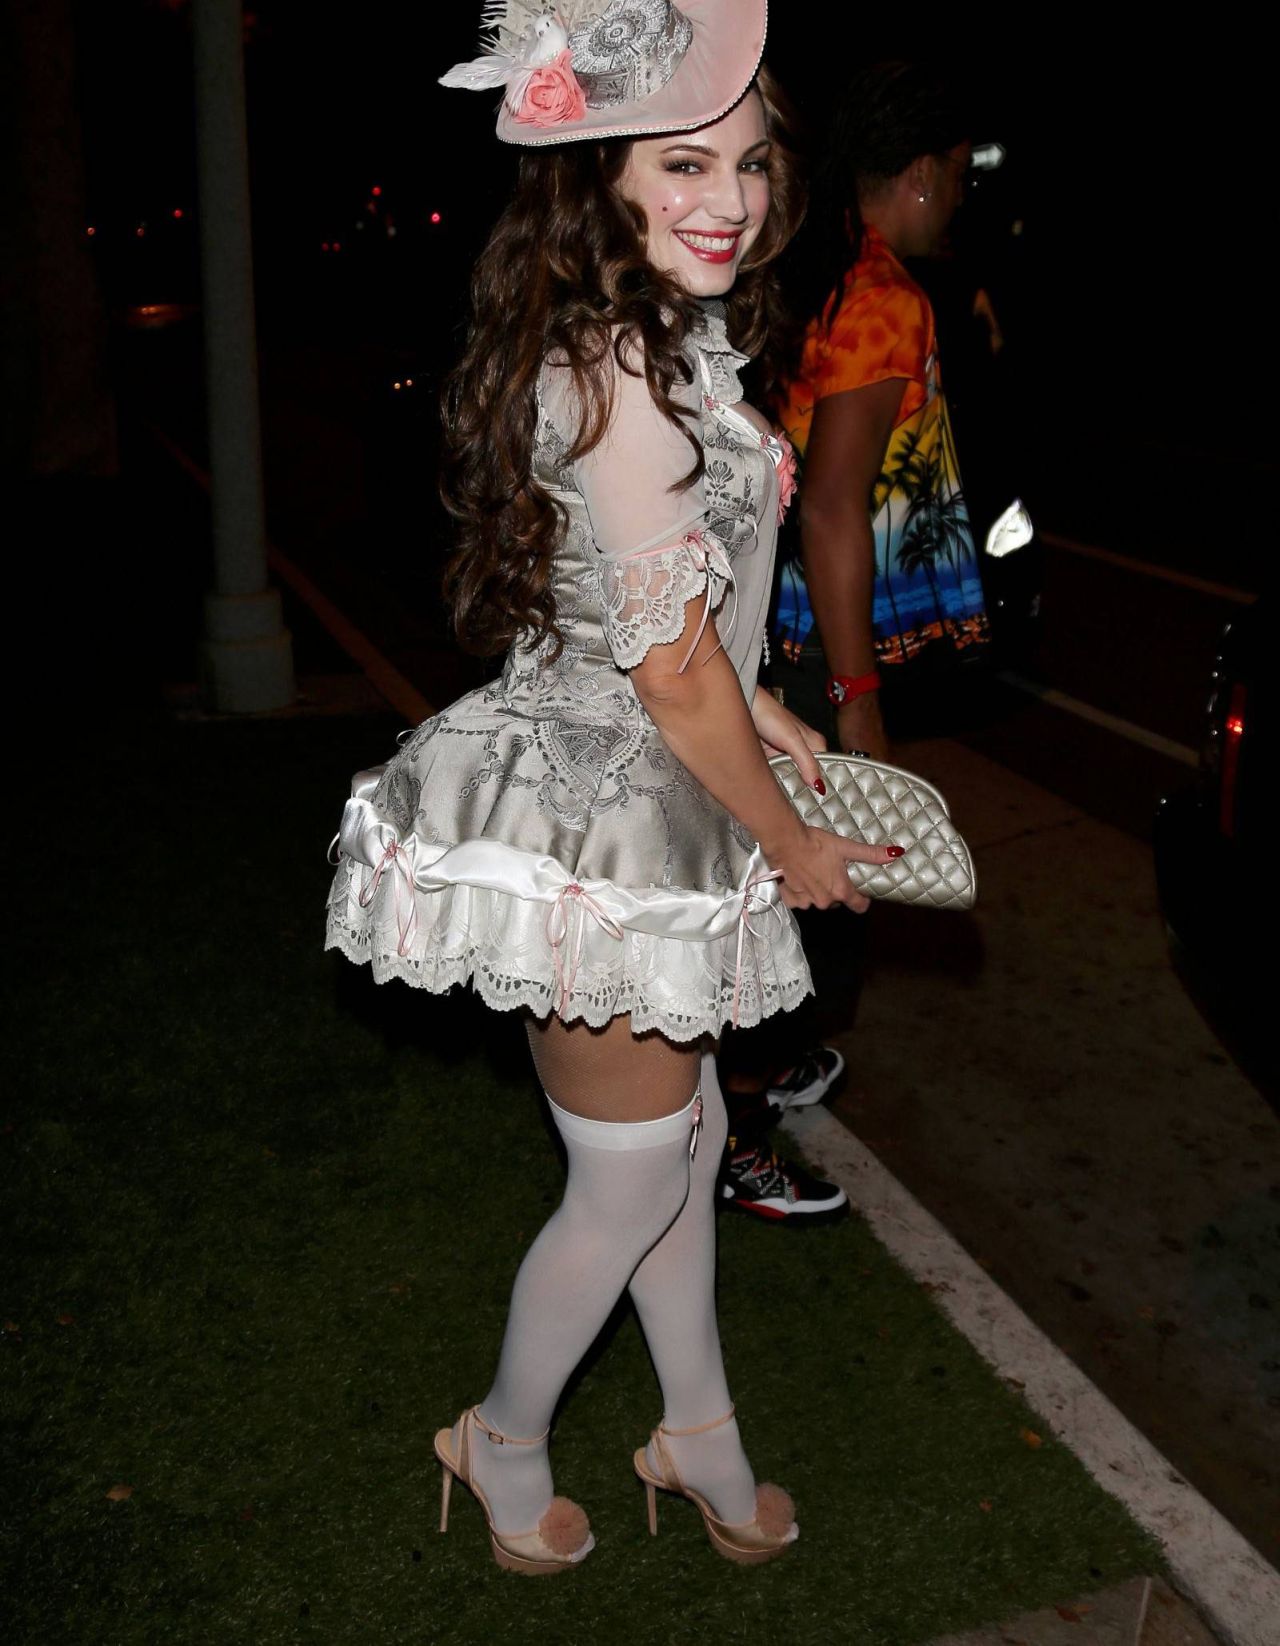 Kelly Brook w pończochach na imprezie Halloweenowej w Beverly Hills